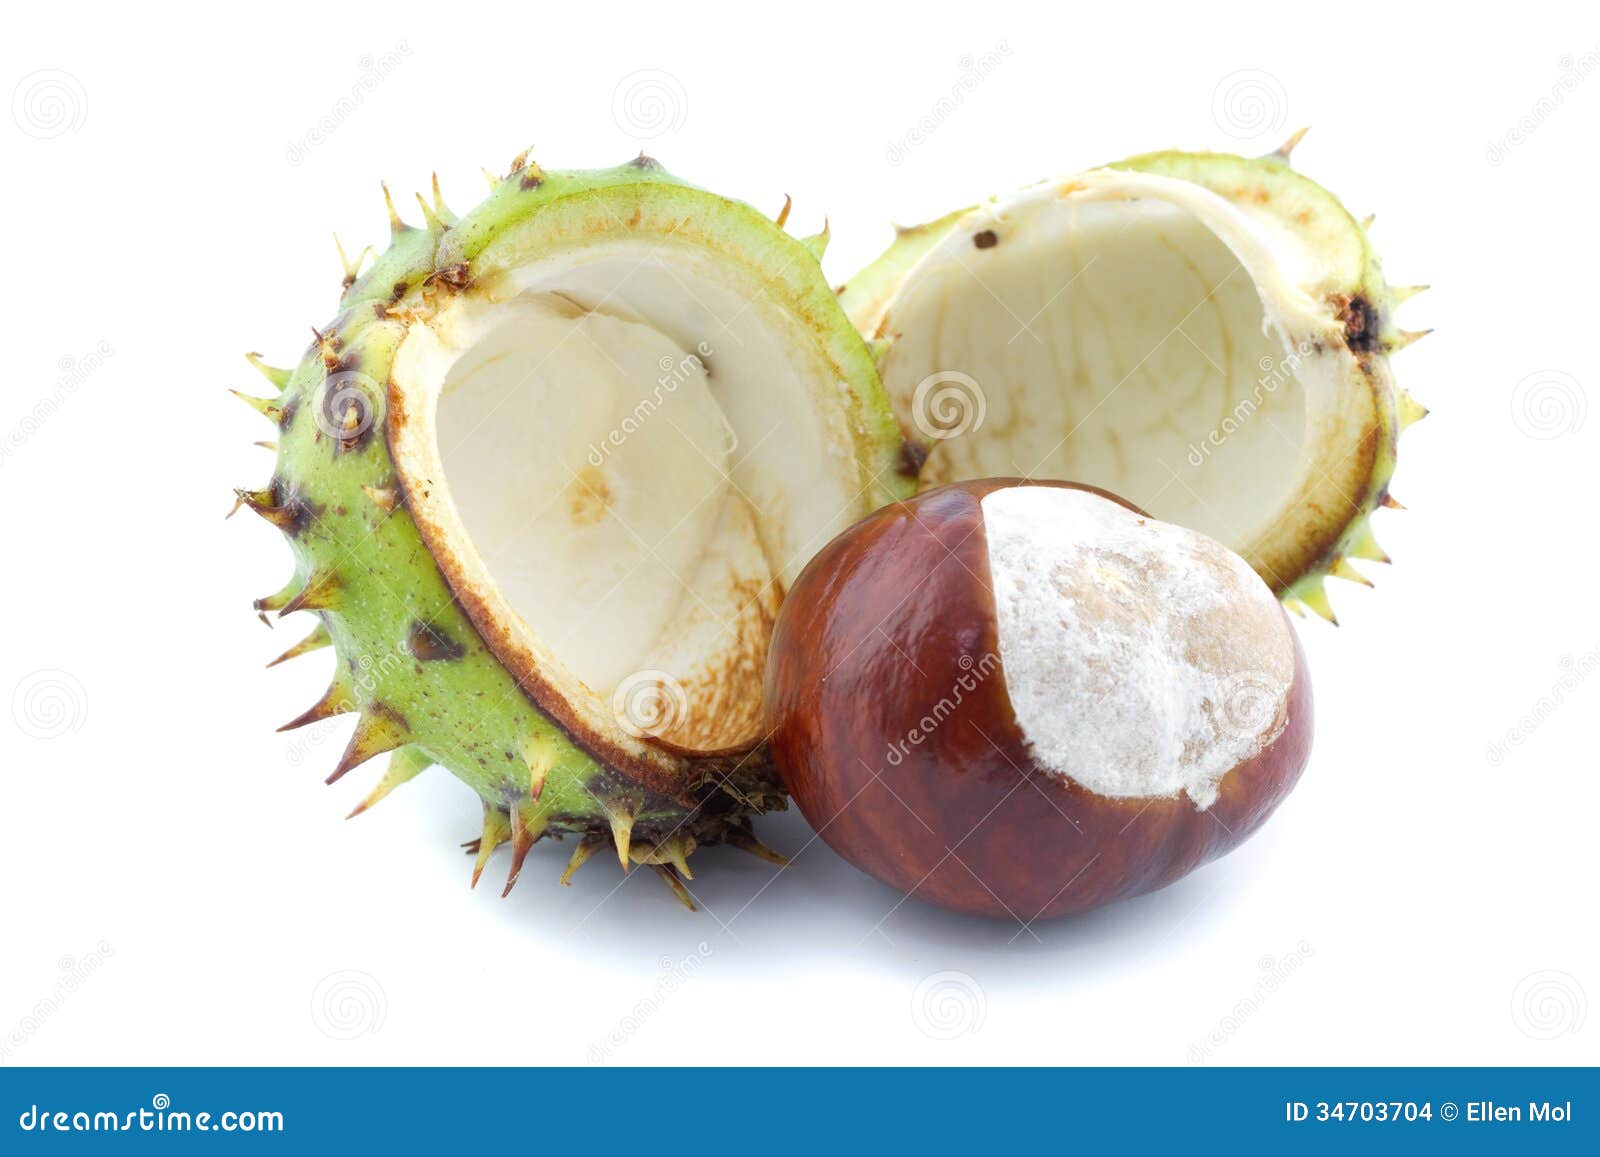 chestnut and chestnut burr